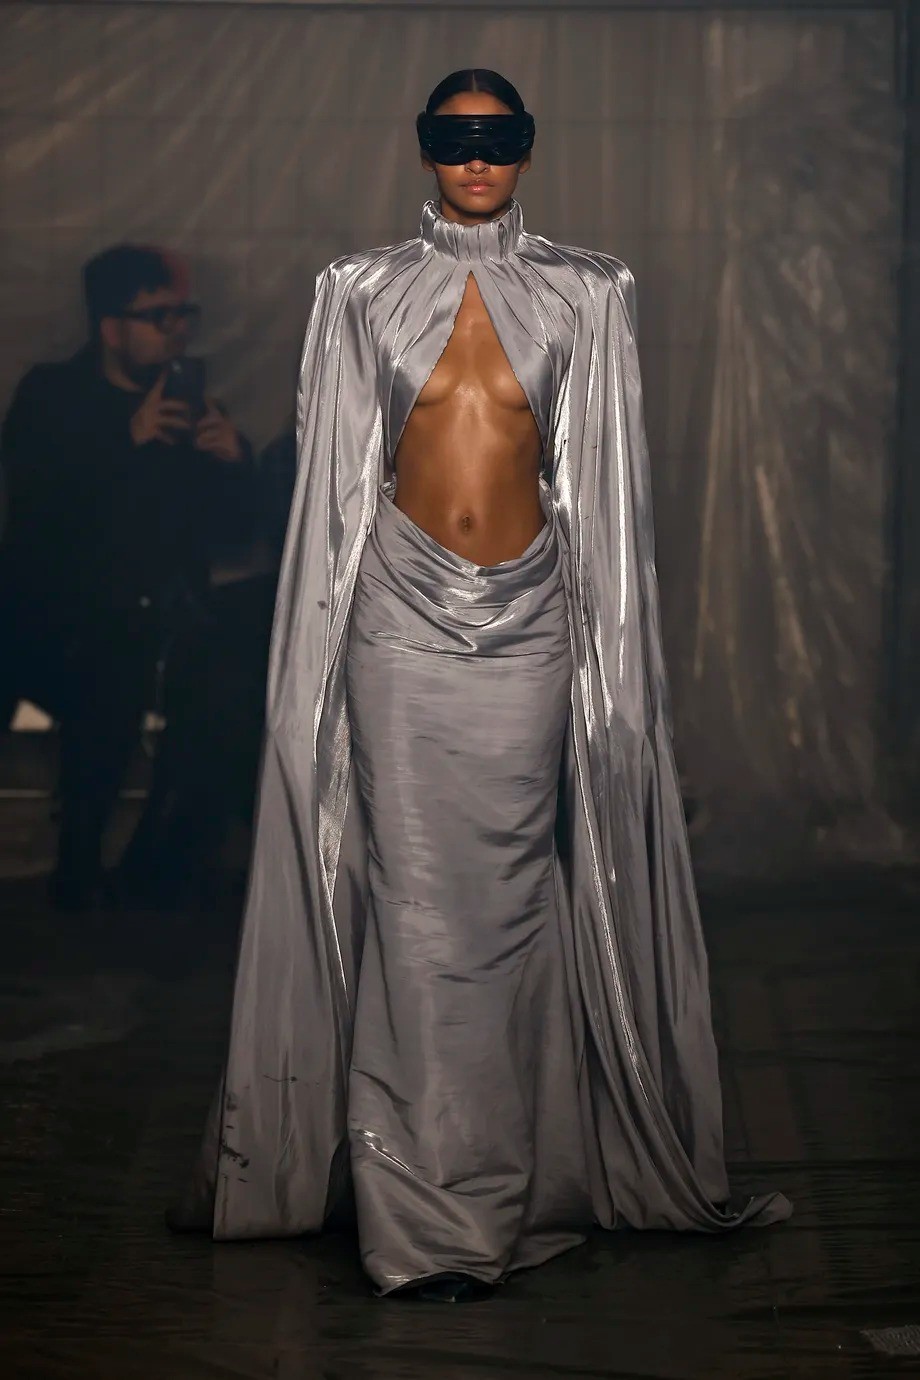 《暗黑破坏神4》主题服装亮相米兰时装周 这服装很地狱